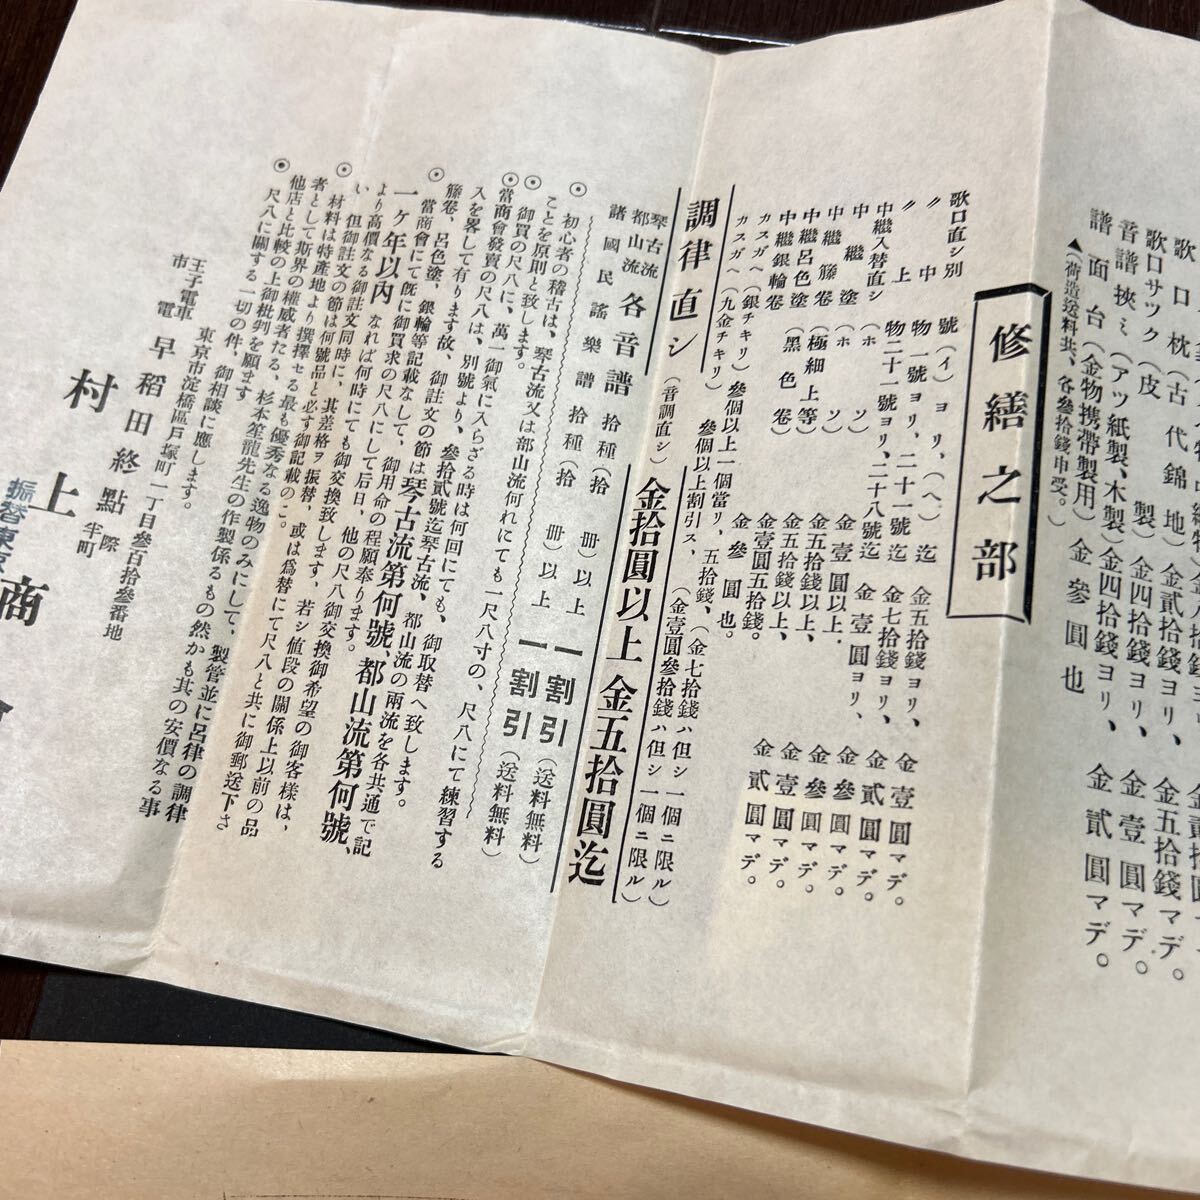 戦前 昭和8年 楽器 尺八 楽譜 価格表 琴古流 村上商会 ガリ版刷資料の画像4